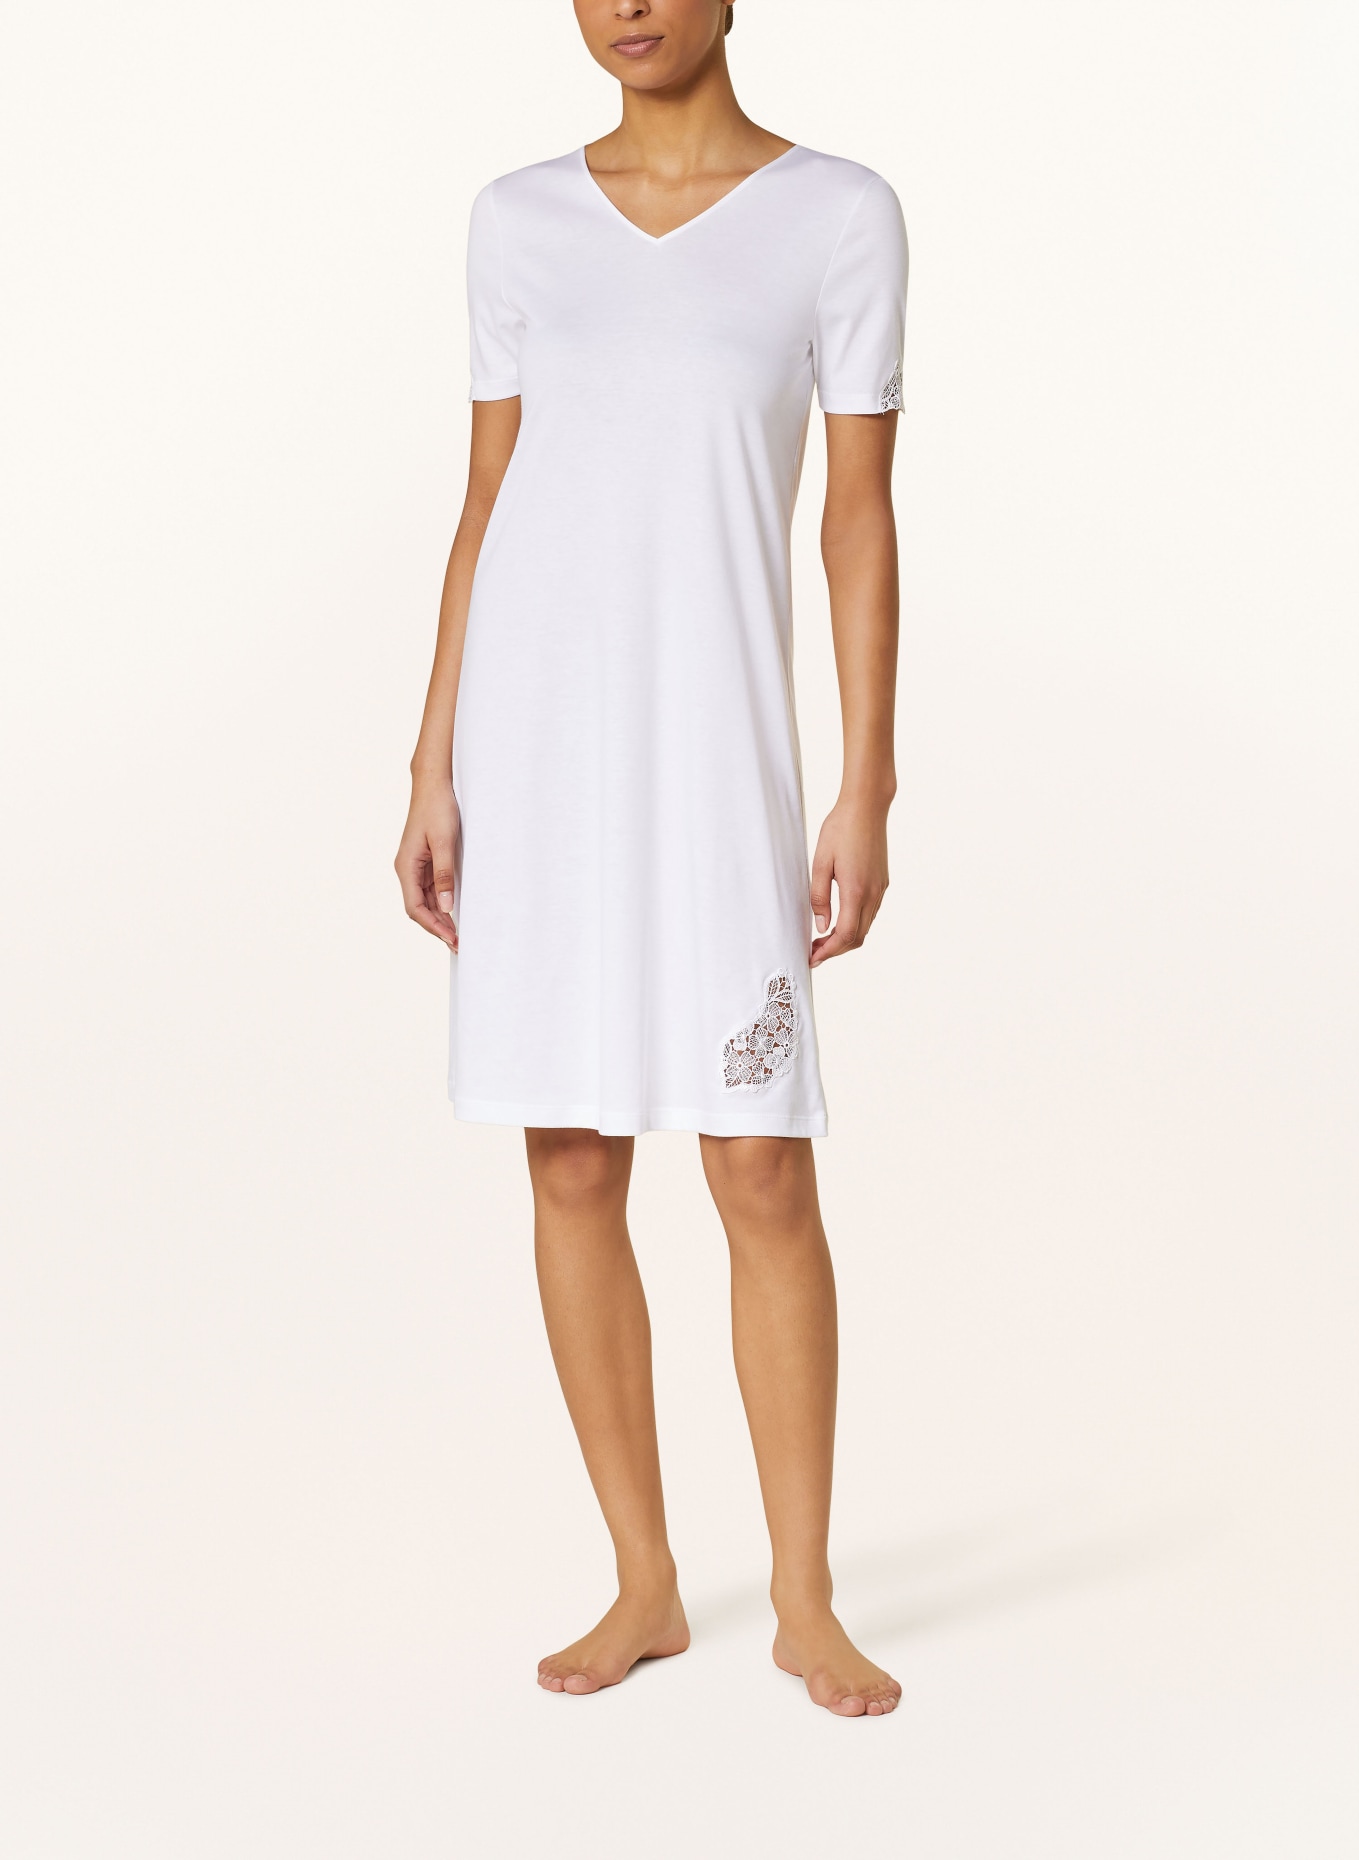 HANRO Nightgown MICHELLE, Color: WHITE (Image 2)